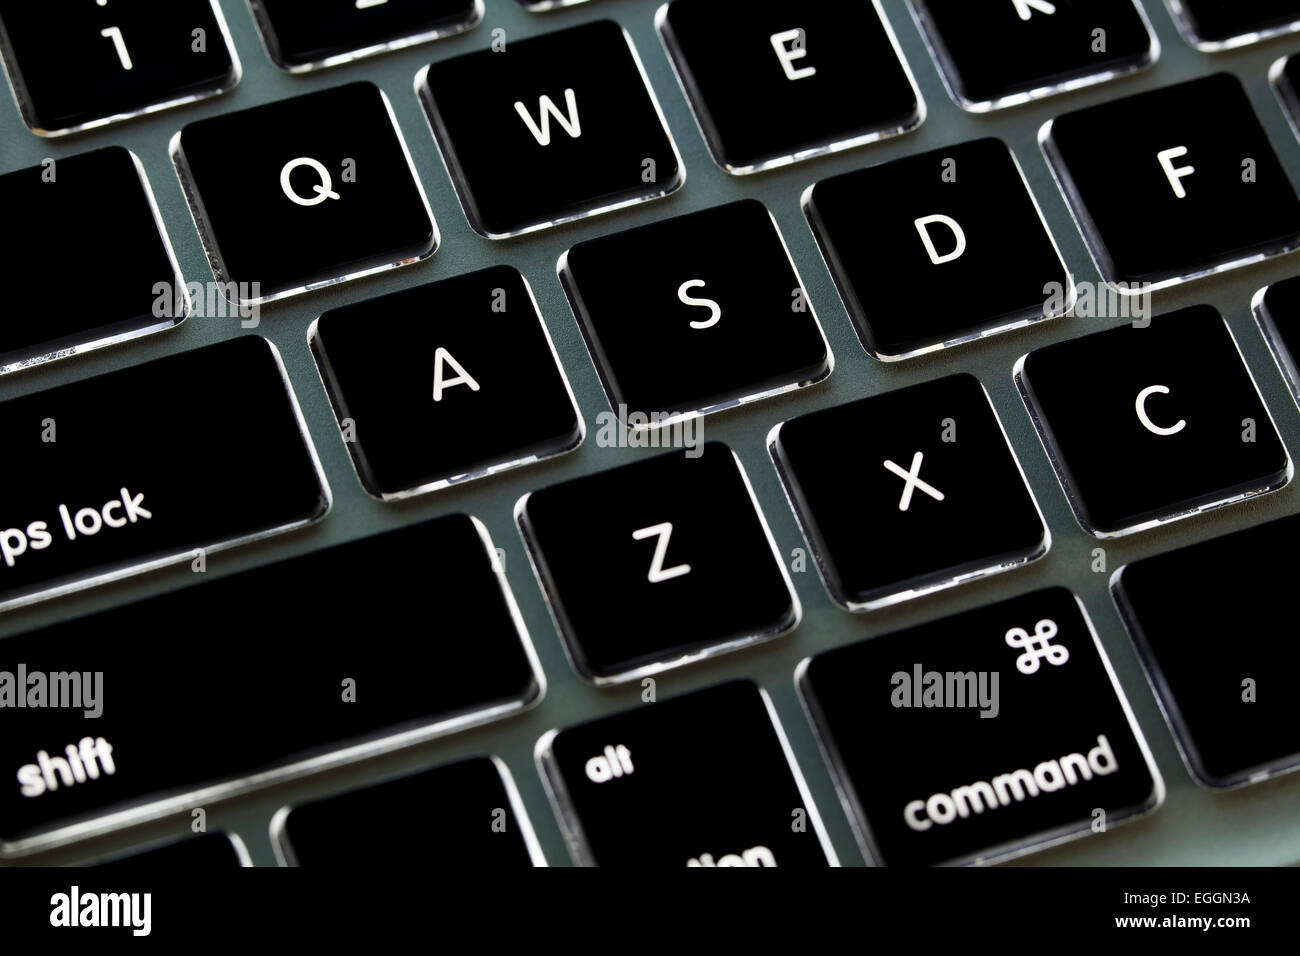 miseria desconcertado dolor de muelas Apple Macbook Pro teclado iluminado - EE.UU Fotografía de stock - Alamy